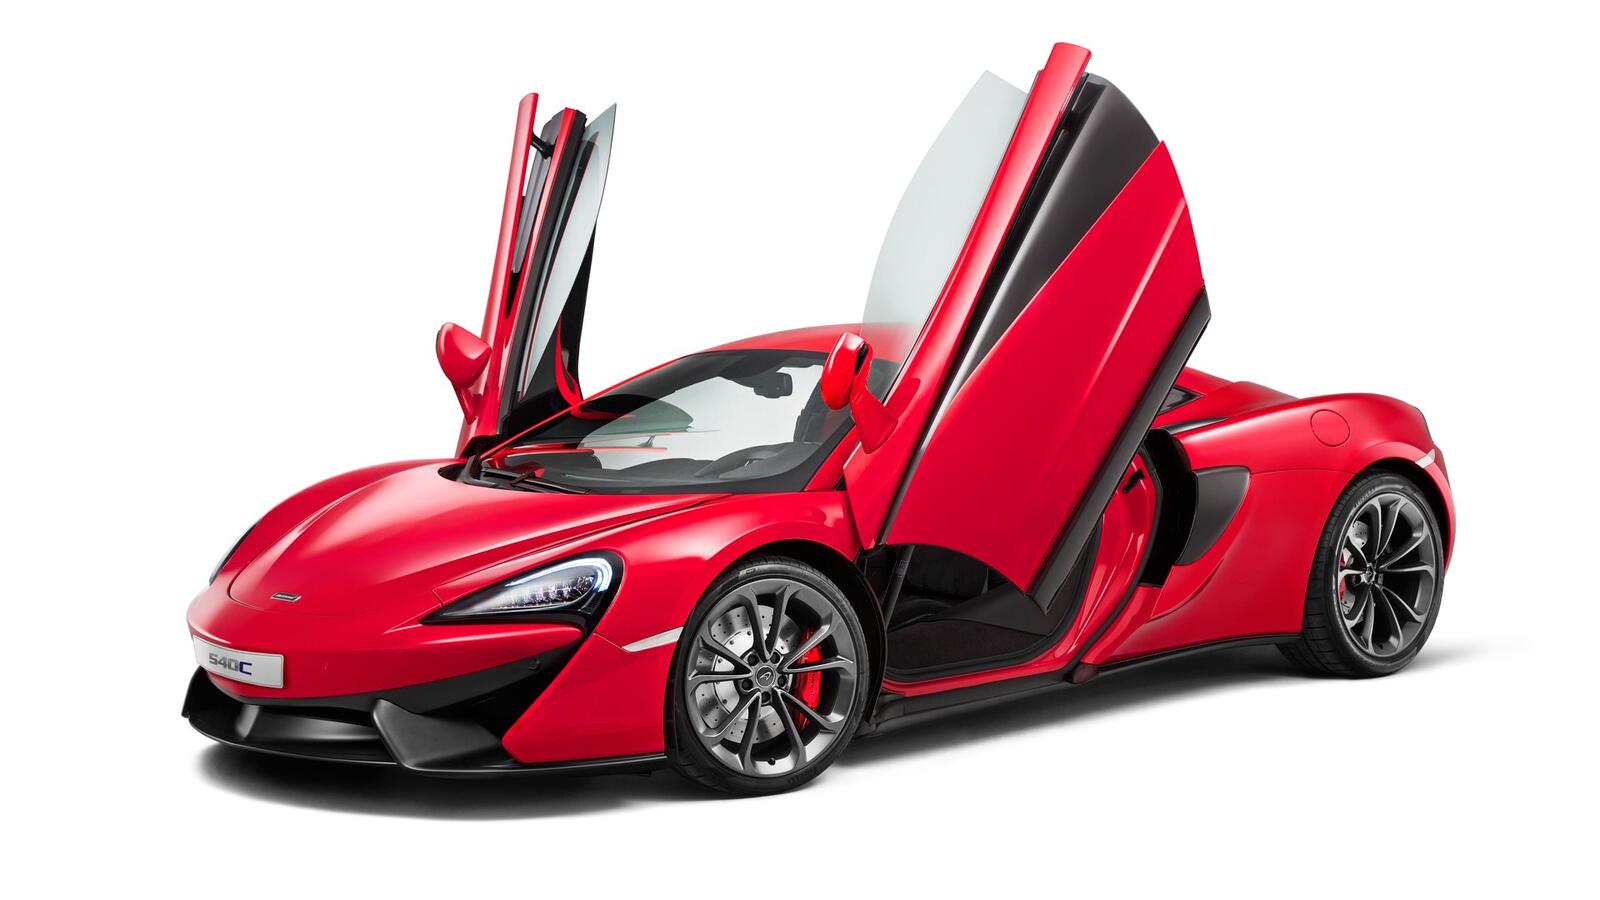 Wallpapers mclaren 540c supercar luxury vehicle on the desktop